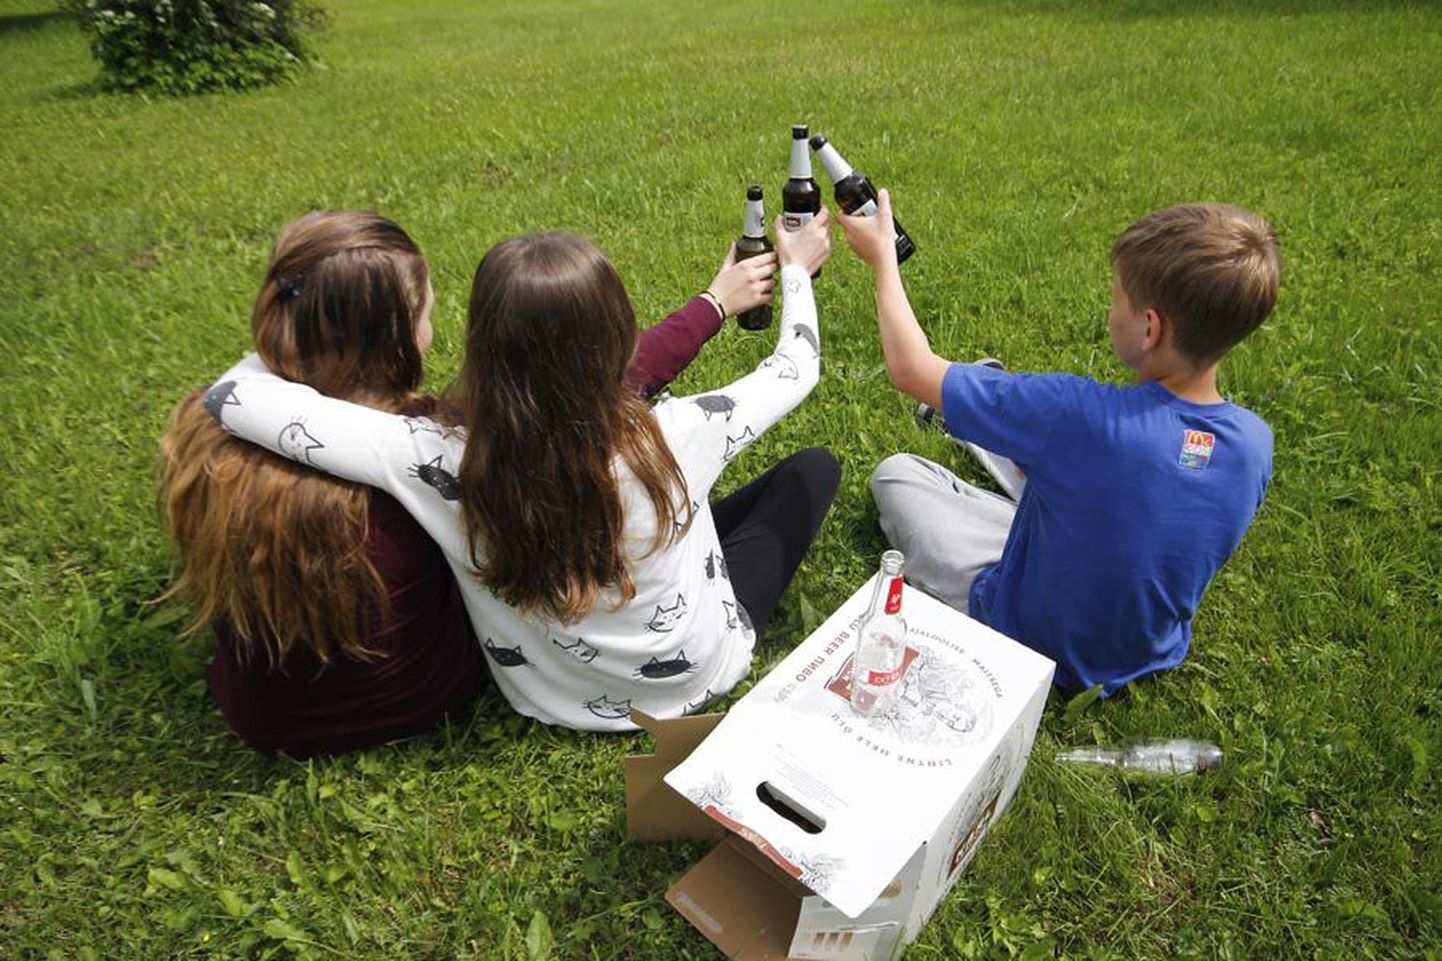 Viljandi noorte seas tehtud uuring näitas, et noored tarvitavad alkoholi eelkõige kodus, sõprade juures, avalikel üritustel, meelelahutuskohtades või sõpradega pargis.